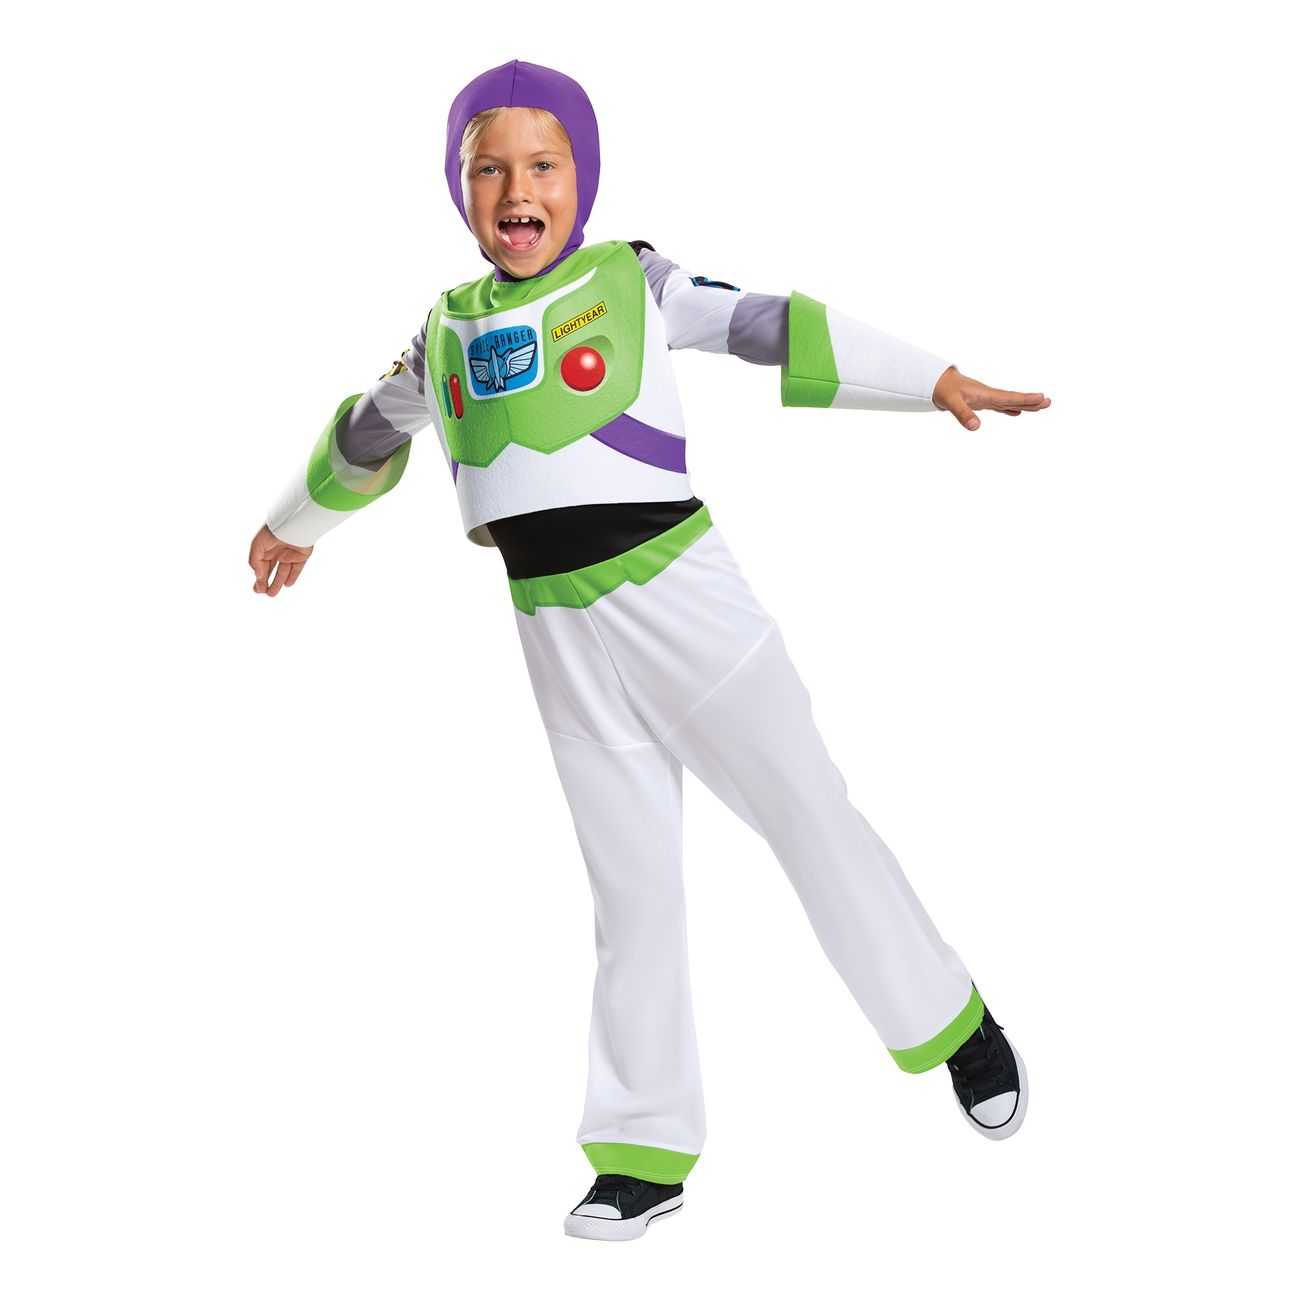 Buzz Lightyear børnekostume  - Toy Story børnekostumer